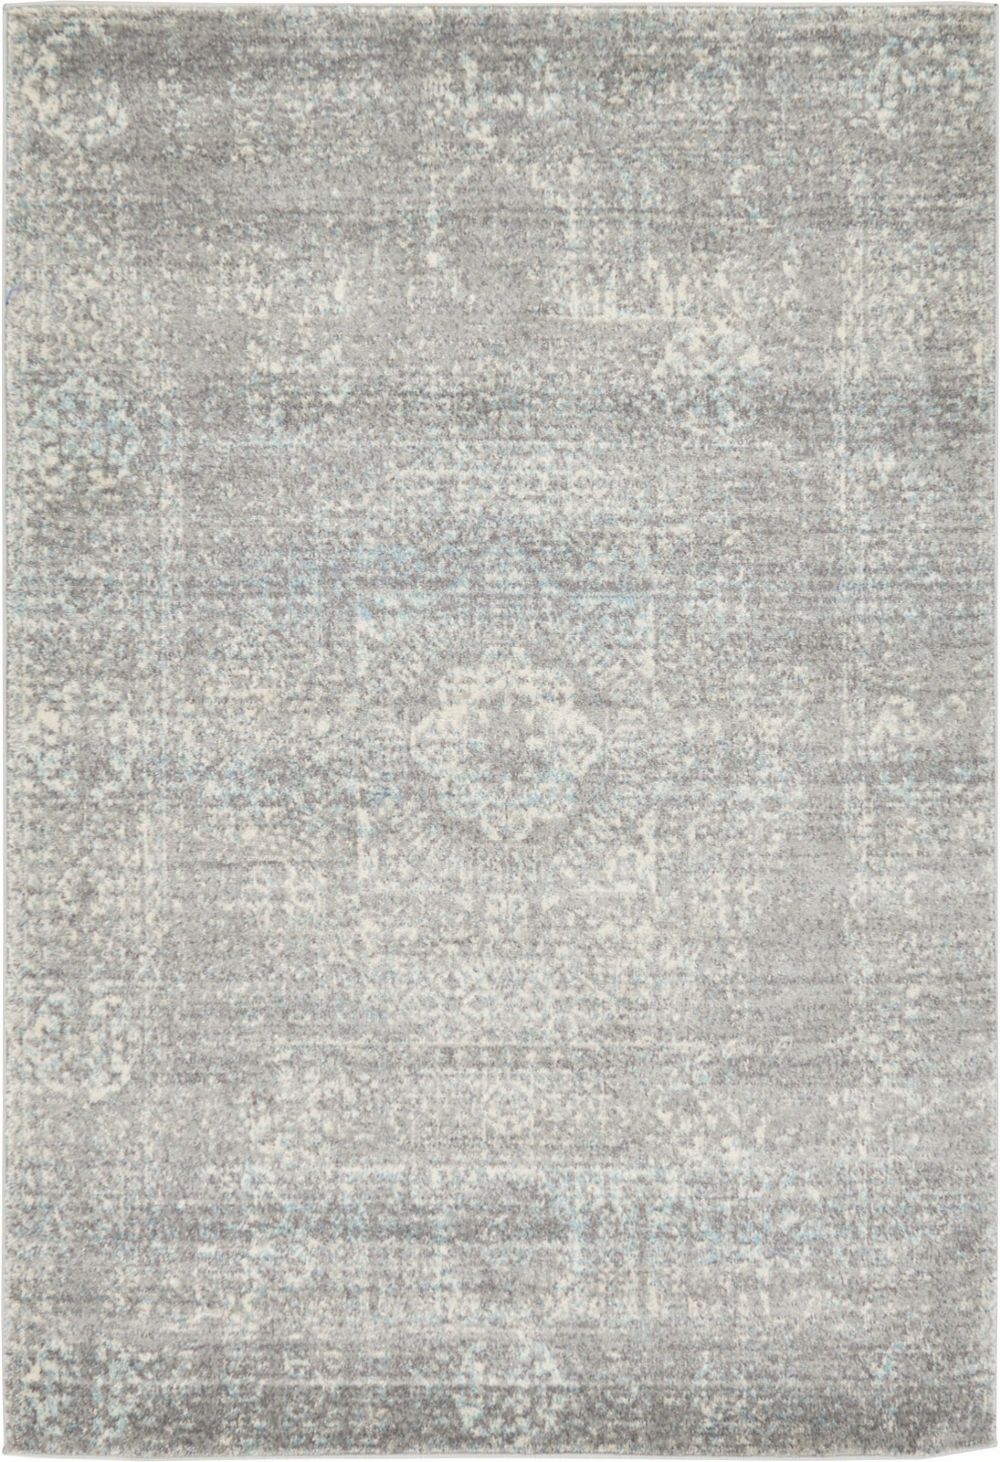 rugpal kasha traditional area rug collection